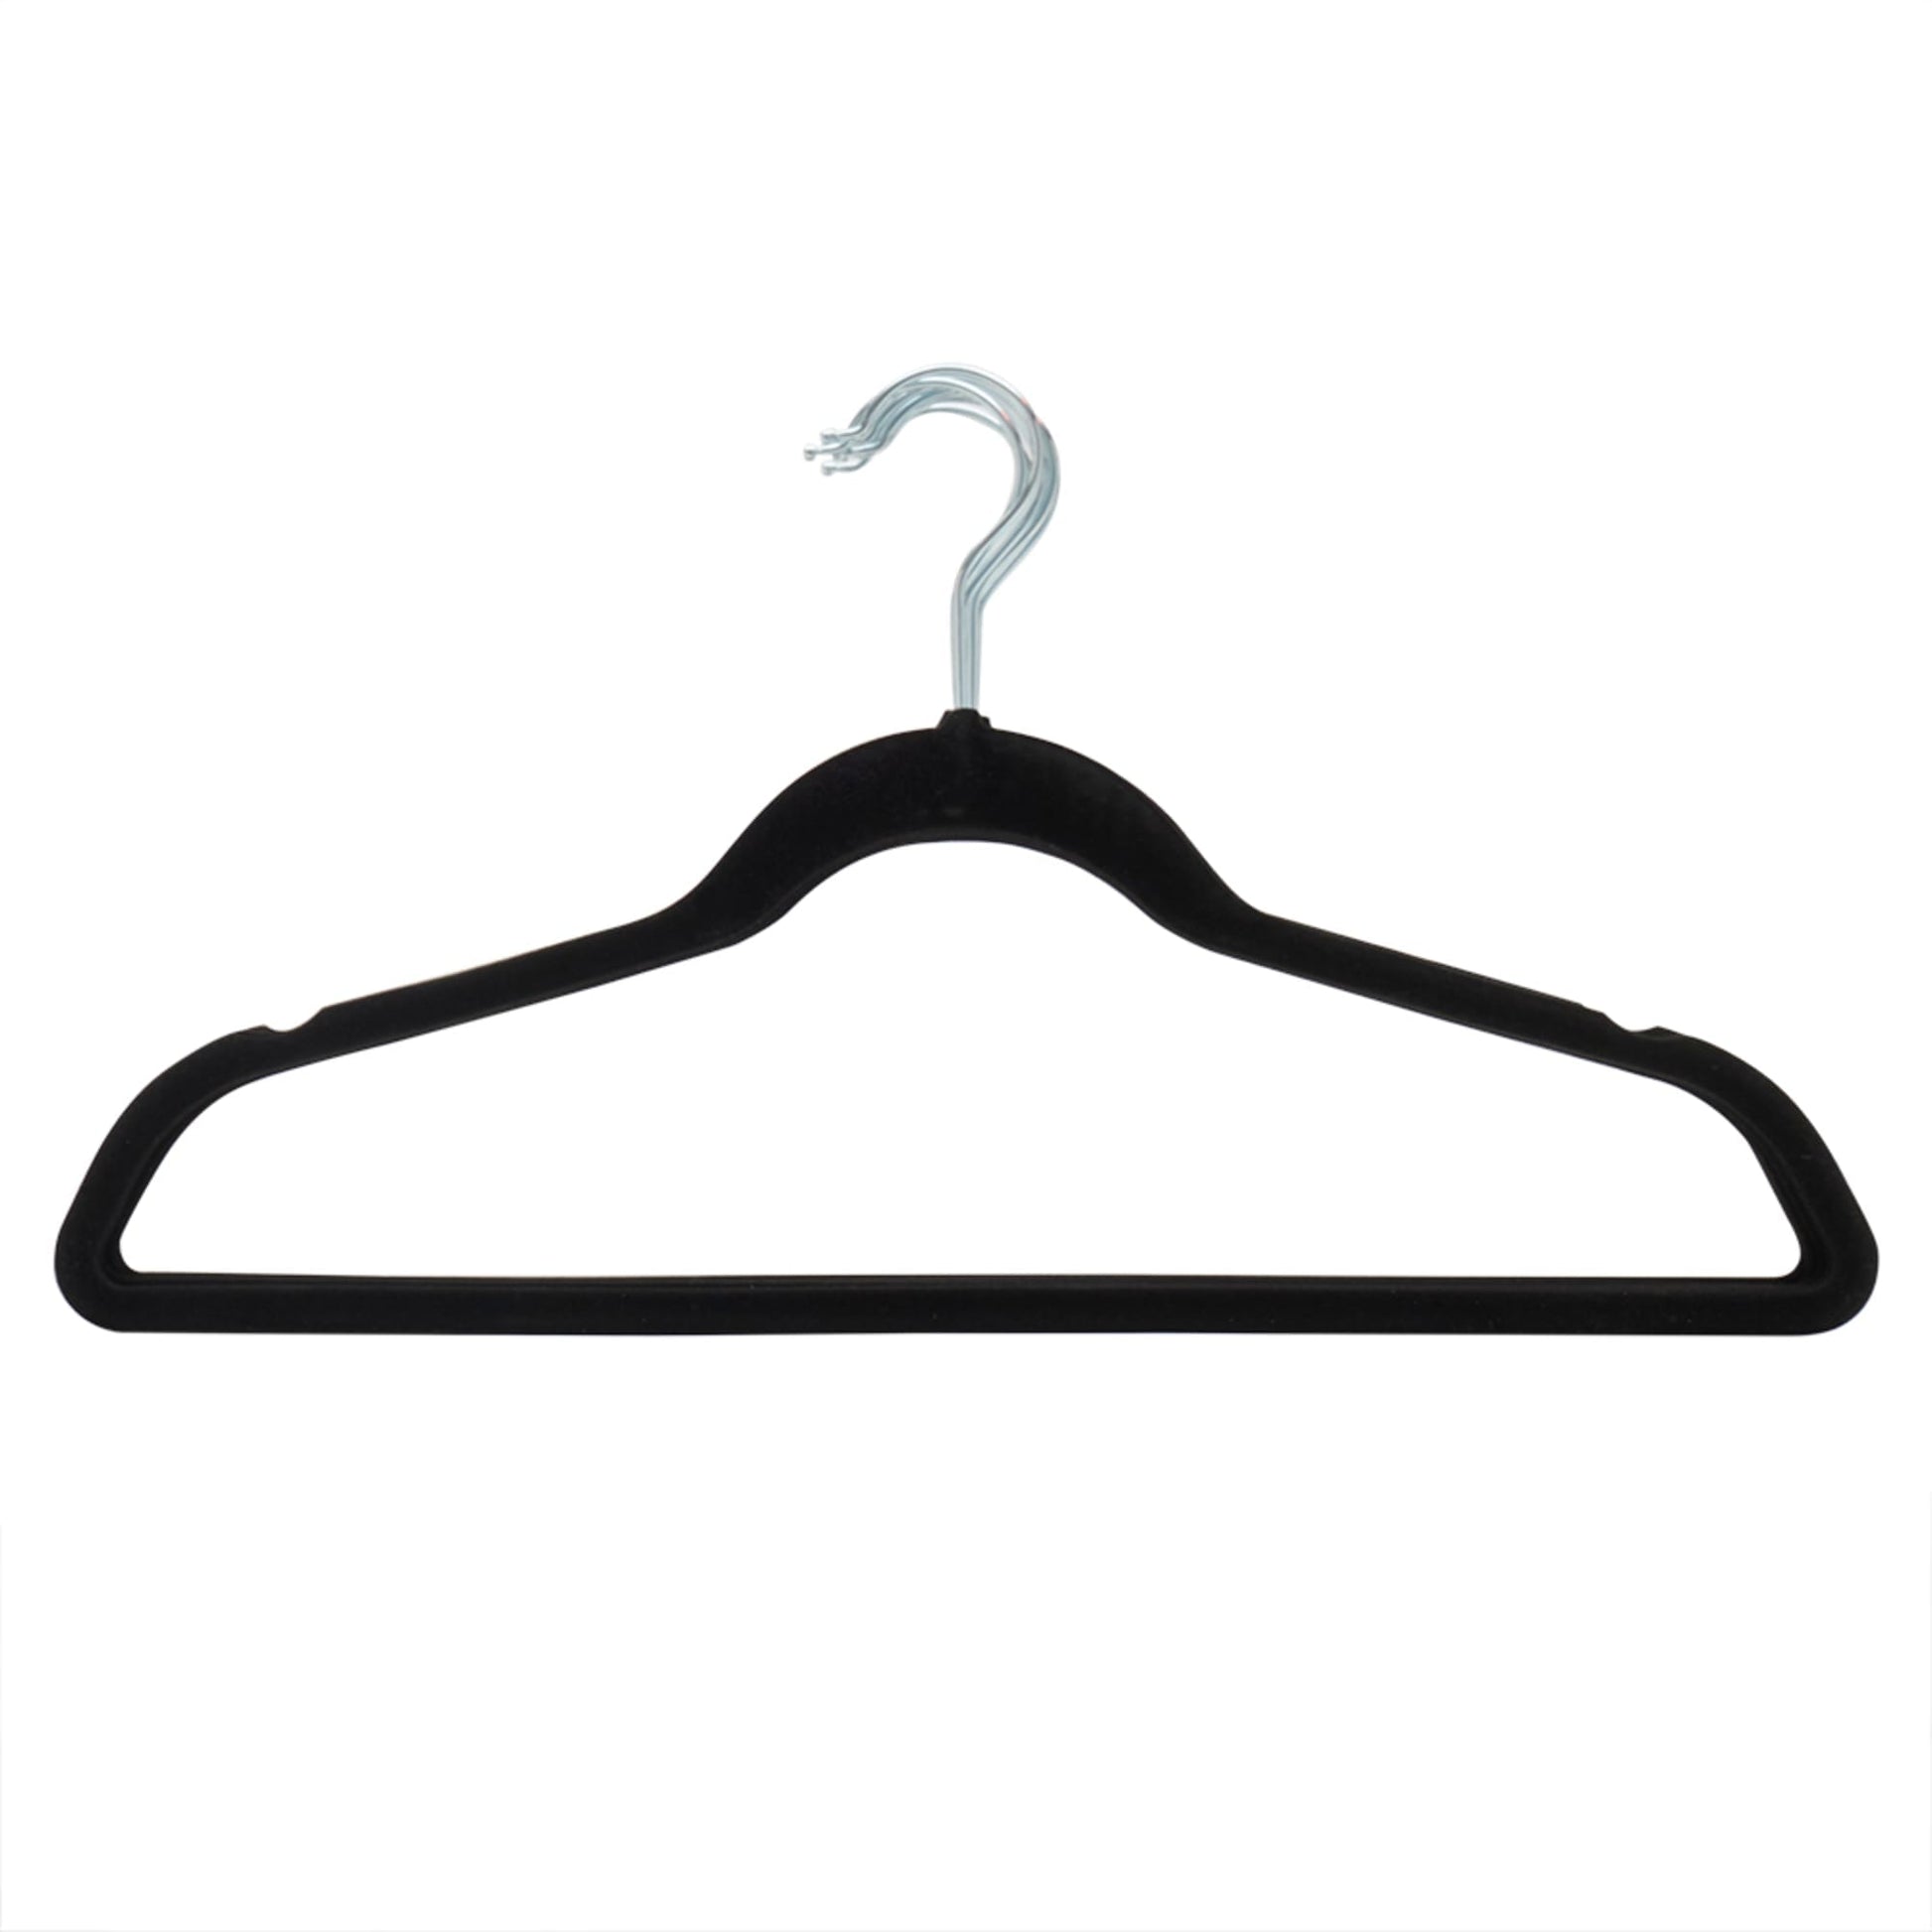 Home Basics Turquoise Velvet Shirt Hangers 10-Pack FH01145 - The Home Depot